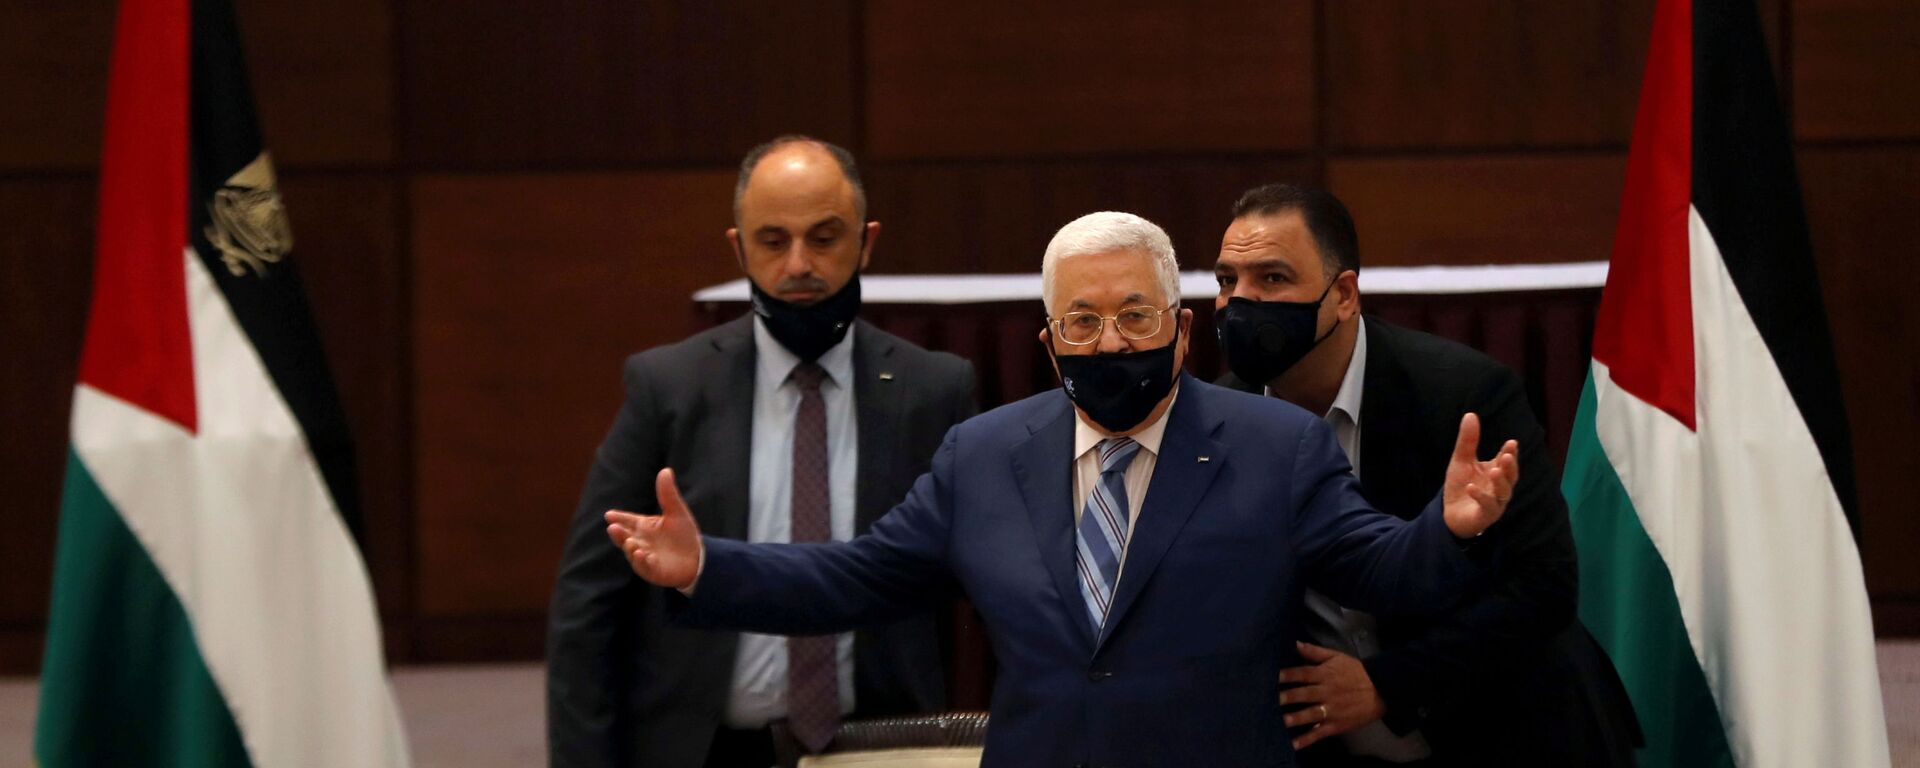 الرئيس الفلسطيني محمود عباس خلال اجتماع في رام الله، الضفة الغربية، فلسطين 18 أغسطس 2020 - سبوتنيك عربي, 1920, 25.05.2021